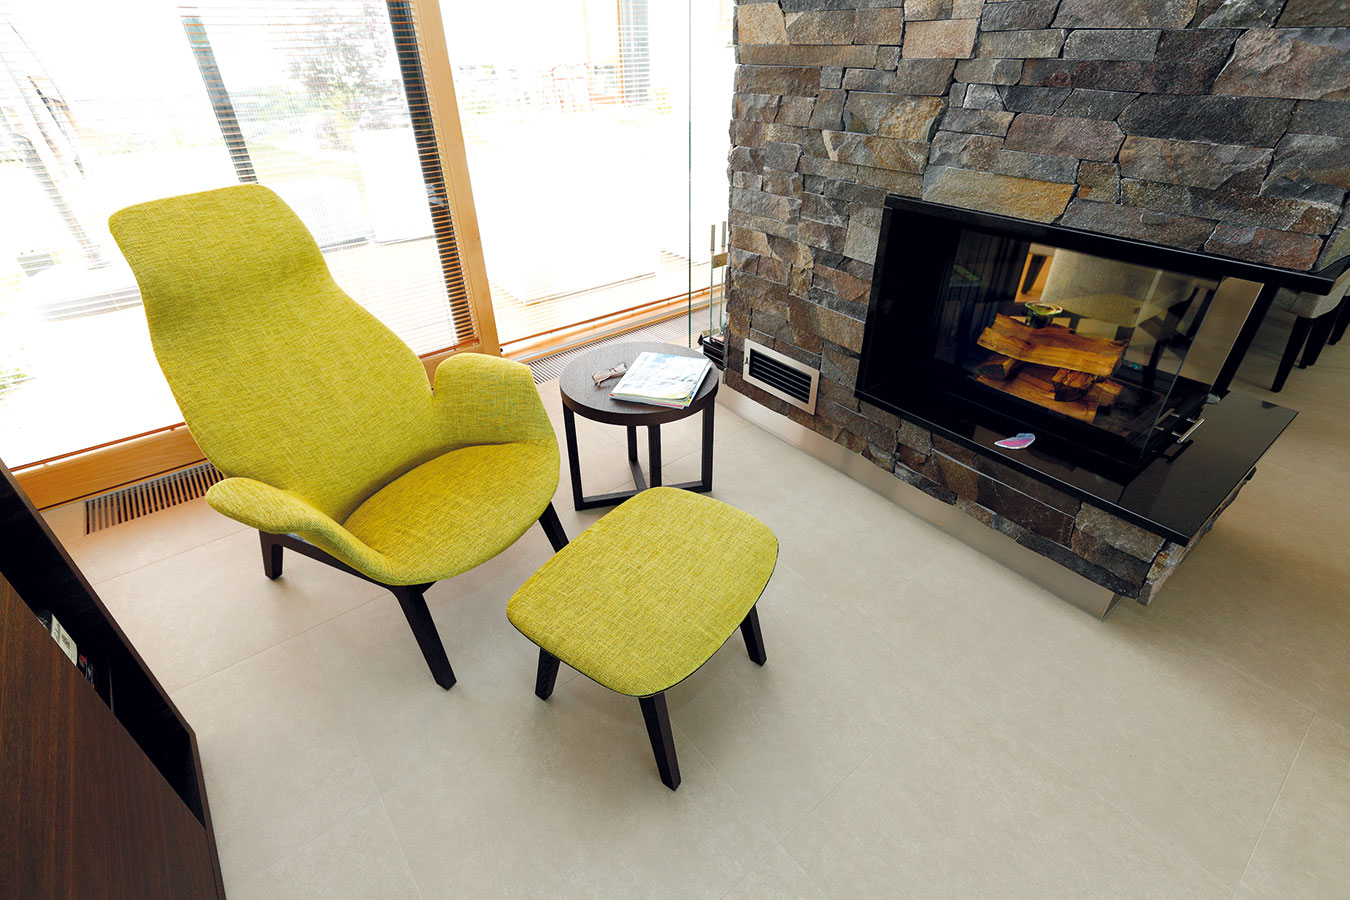 Rozlehlý interiér člení kromě nábytku krb, který vymezuje místečko na relaxační koutek.